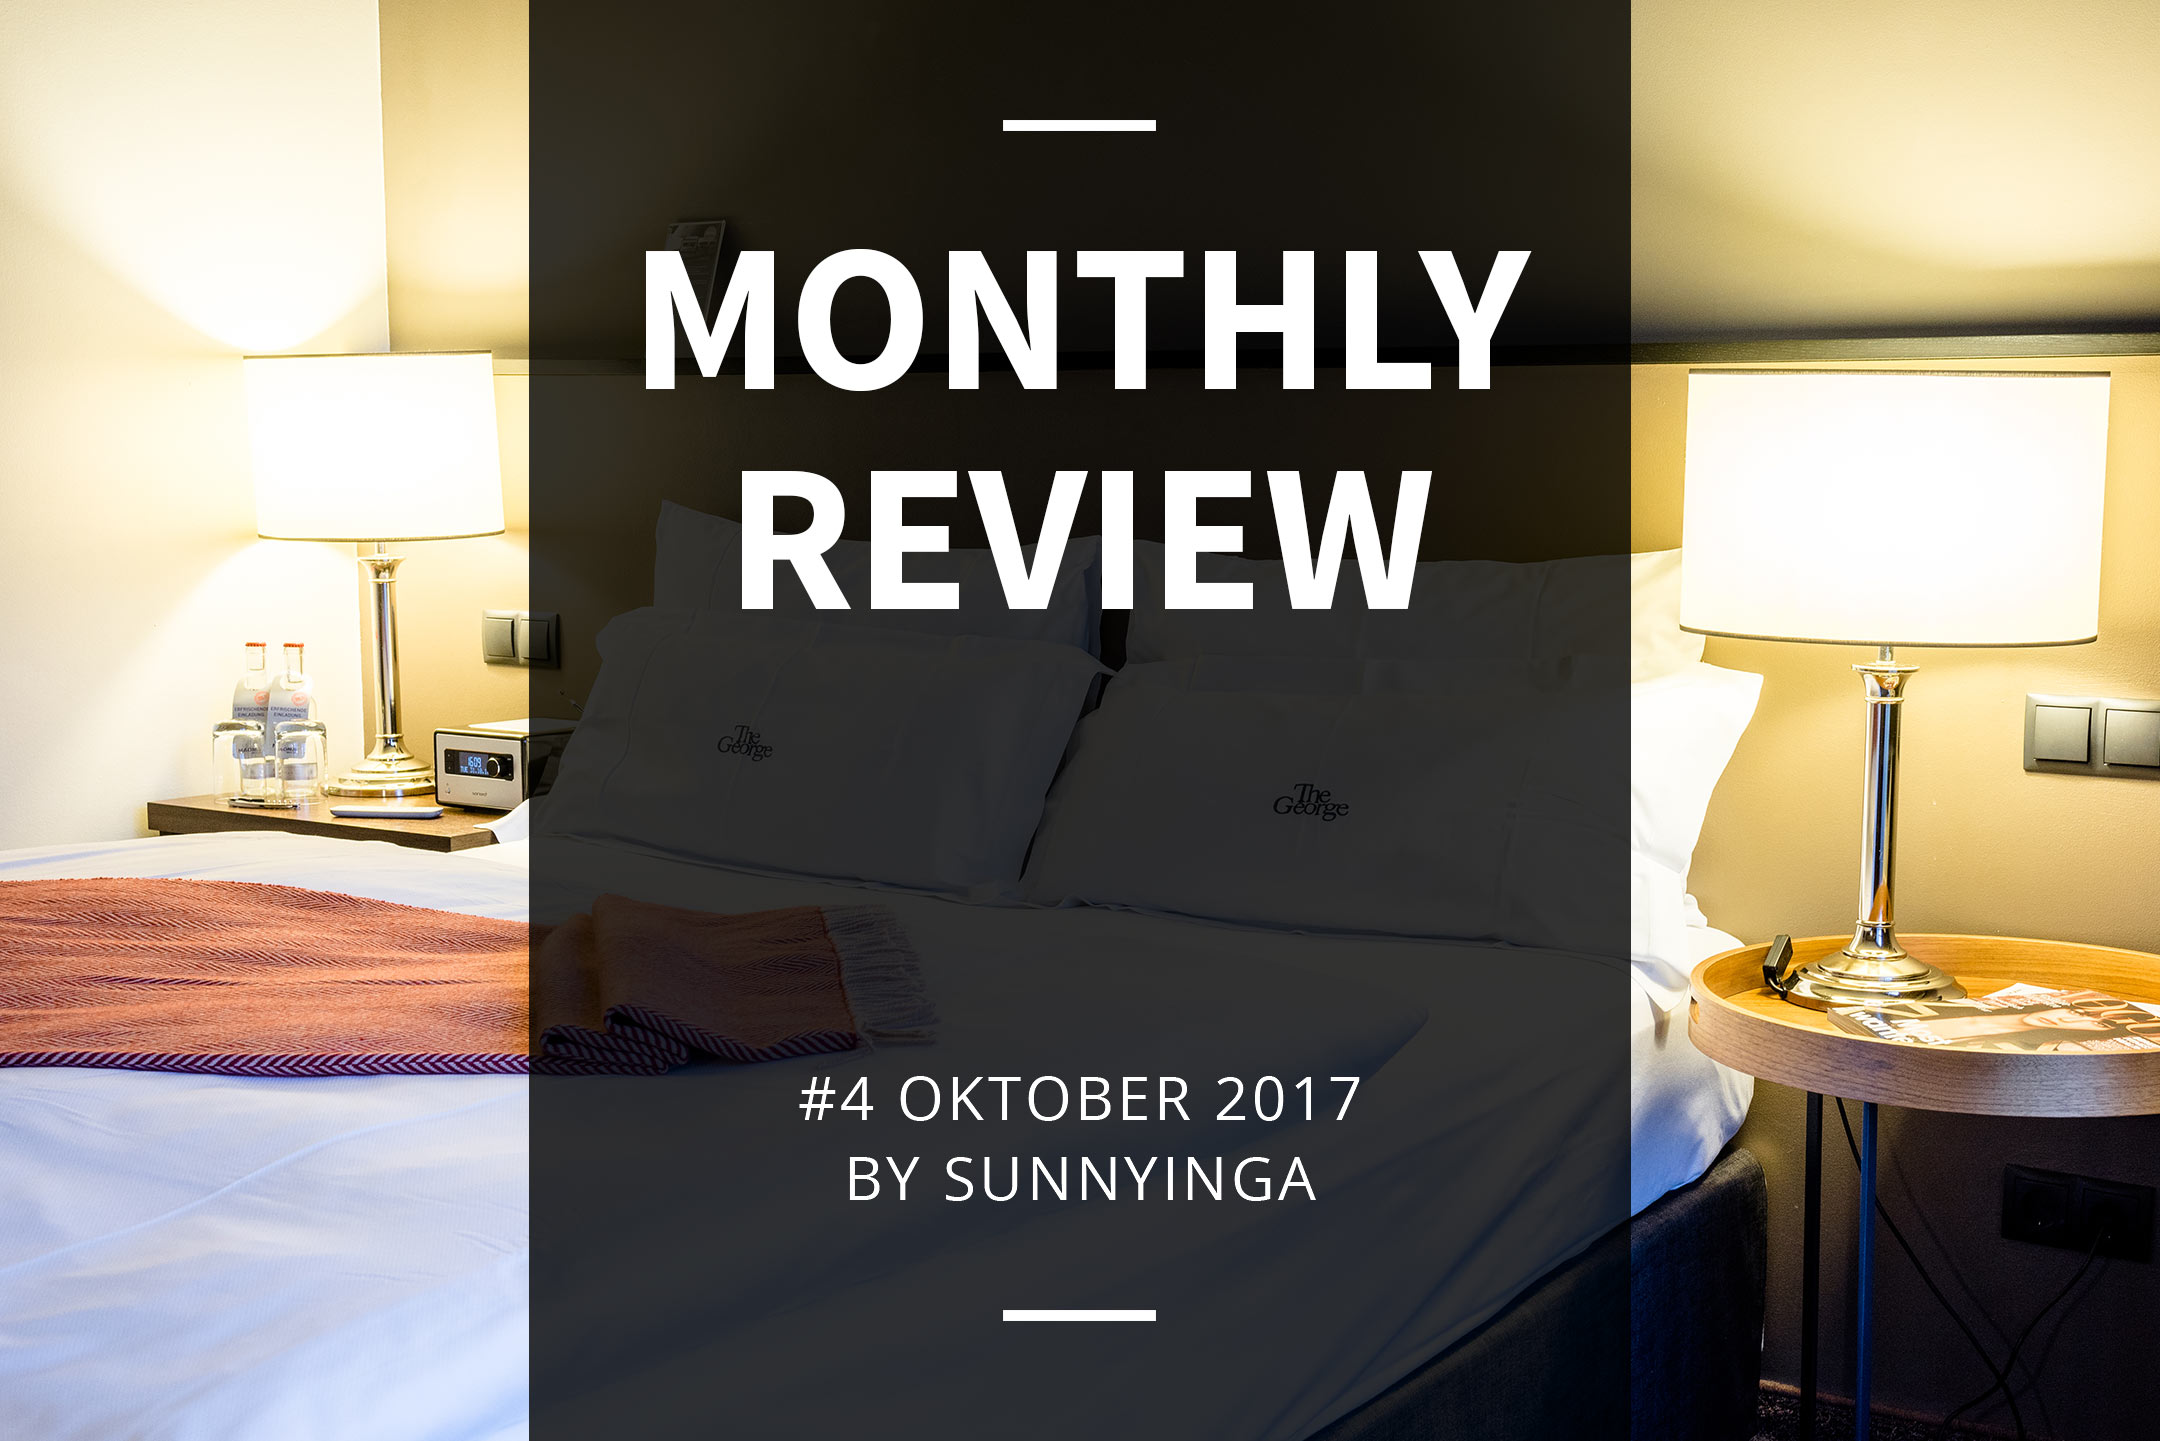 Sunnyinga Monthly Review Monatsrückblick #4 Oktober 2017